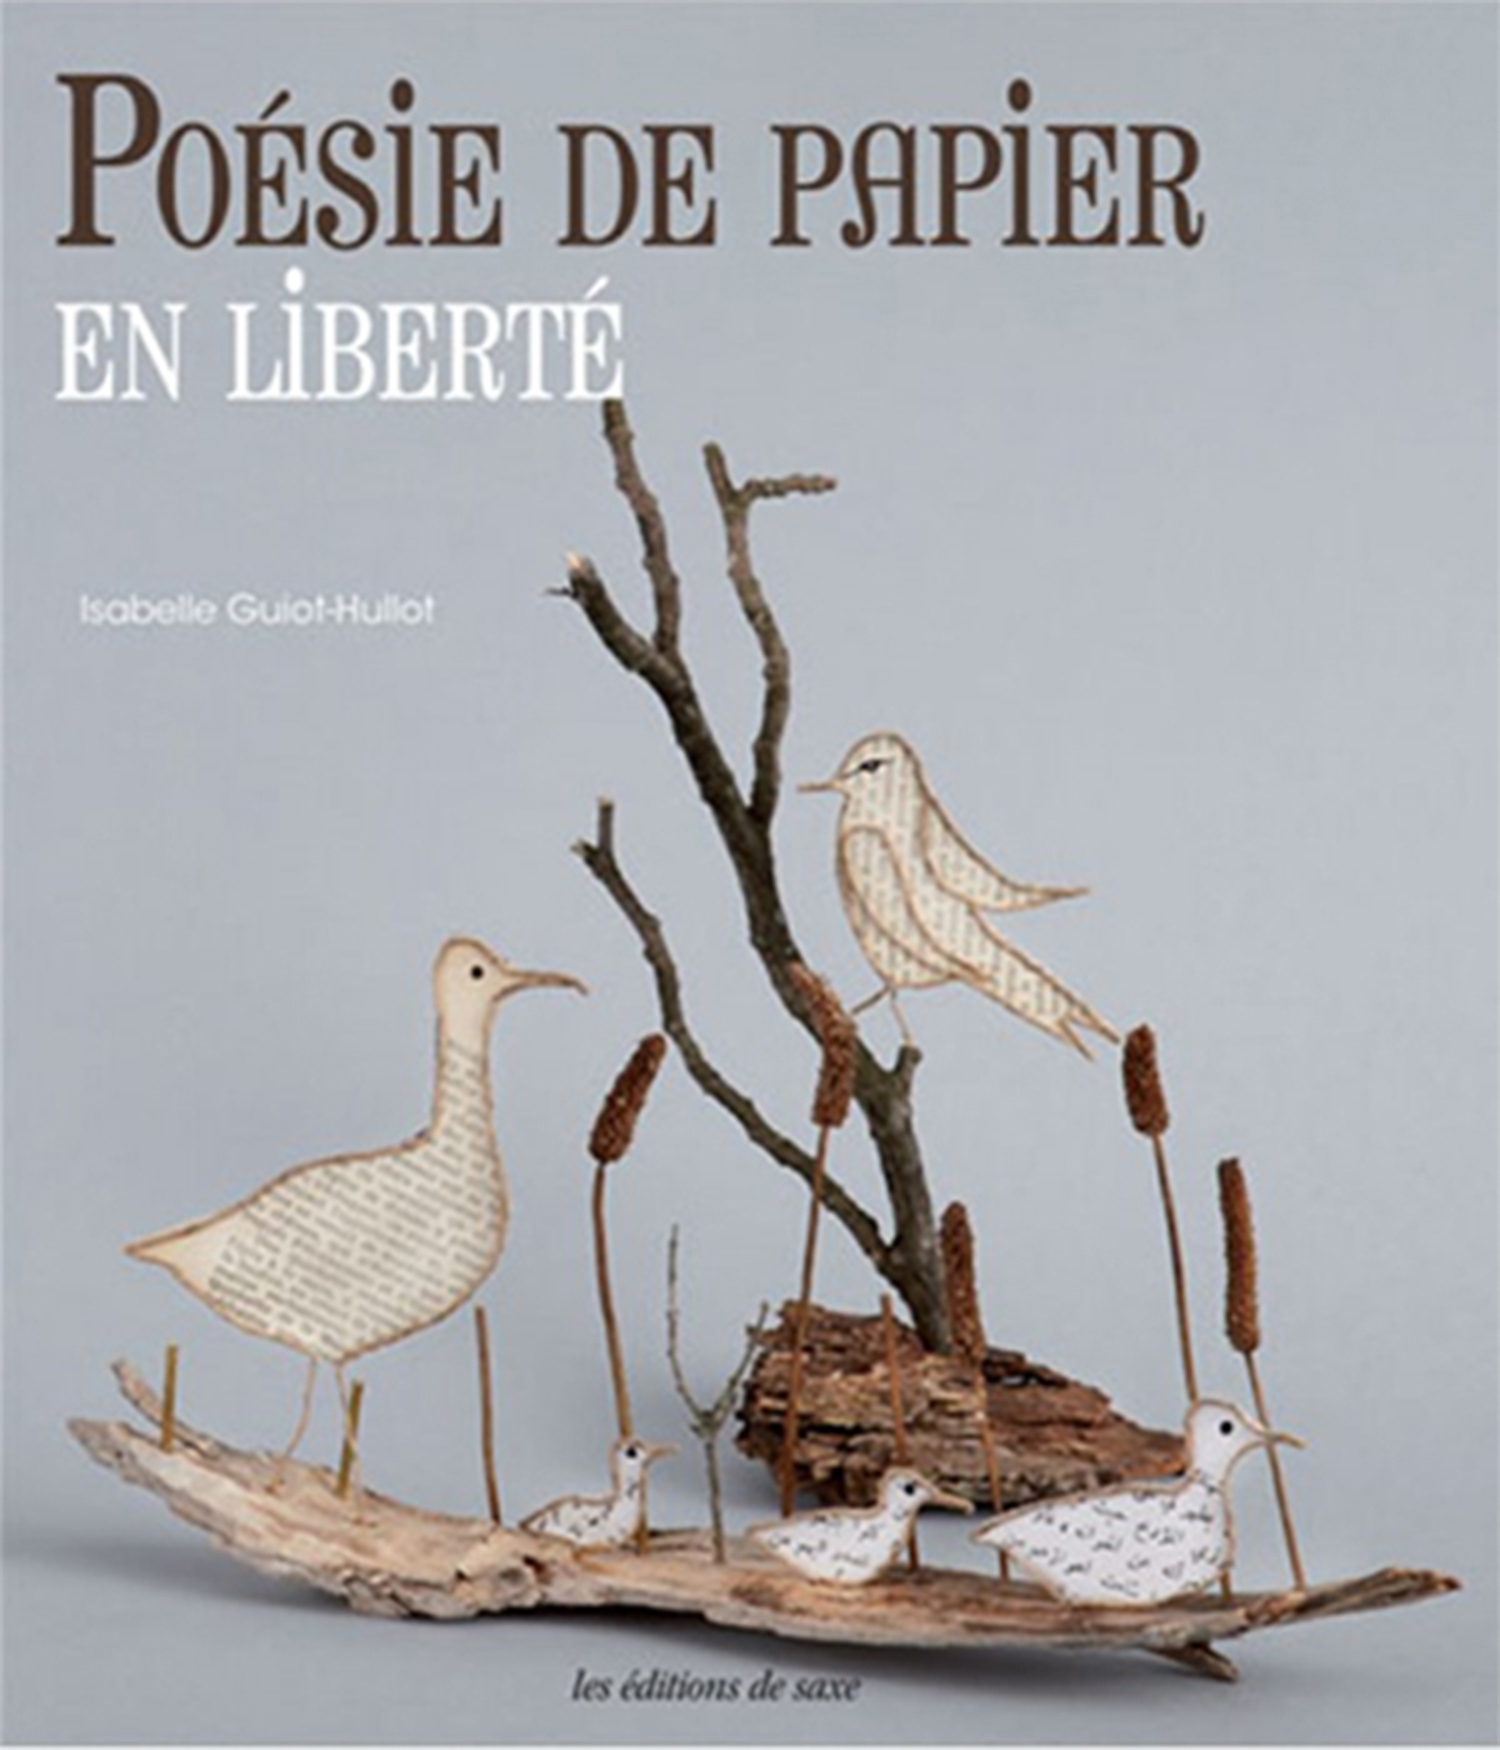 Livre Poésie de Papier en Liberté d'Isabelle Guiot-Hullot